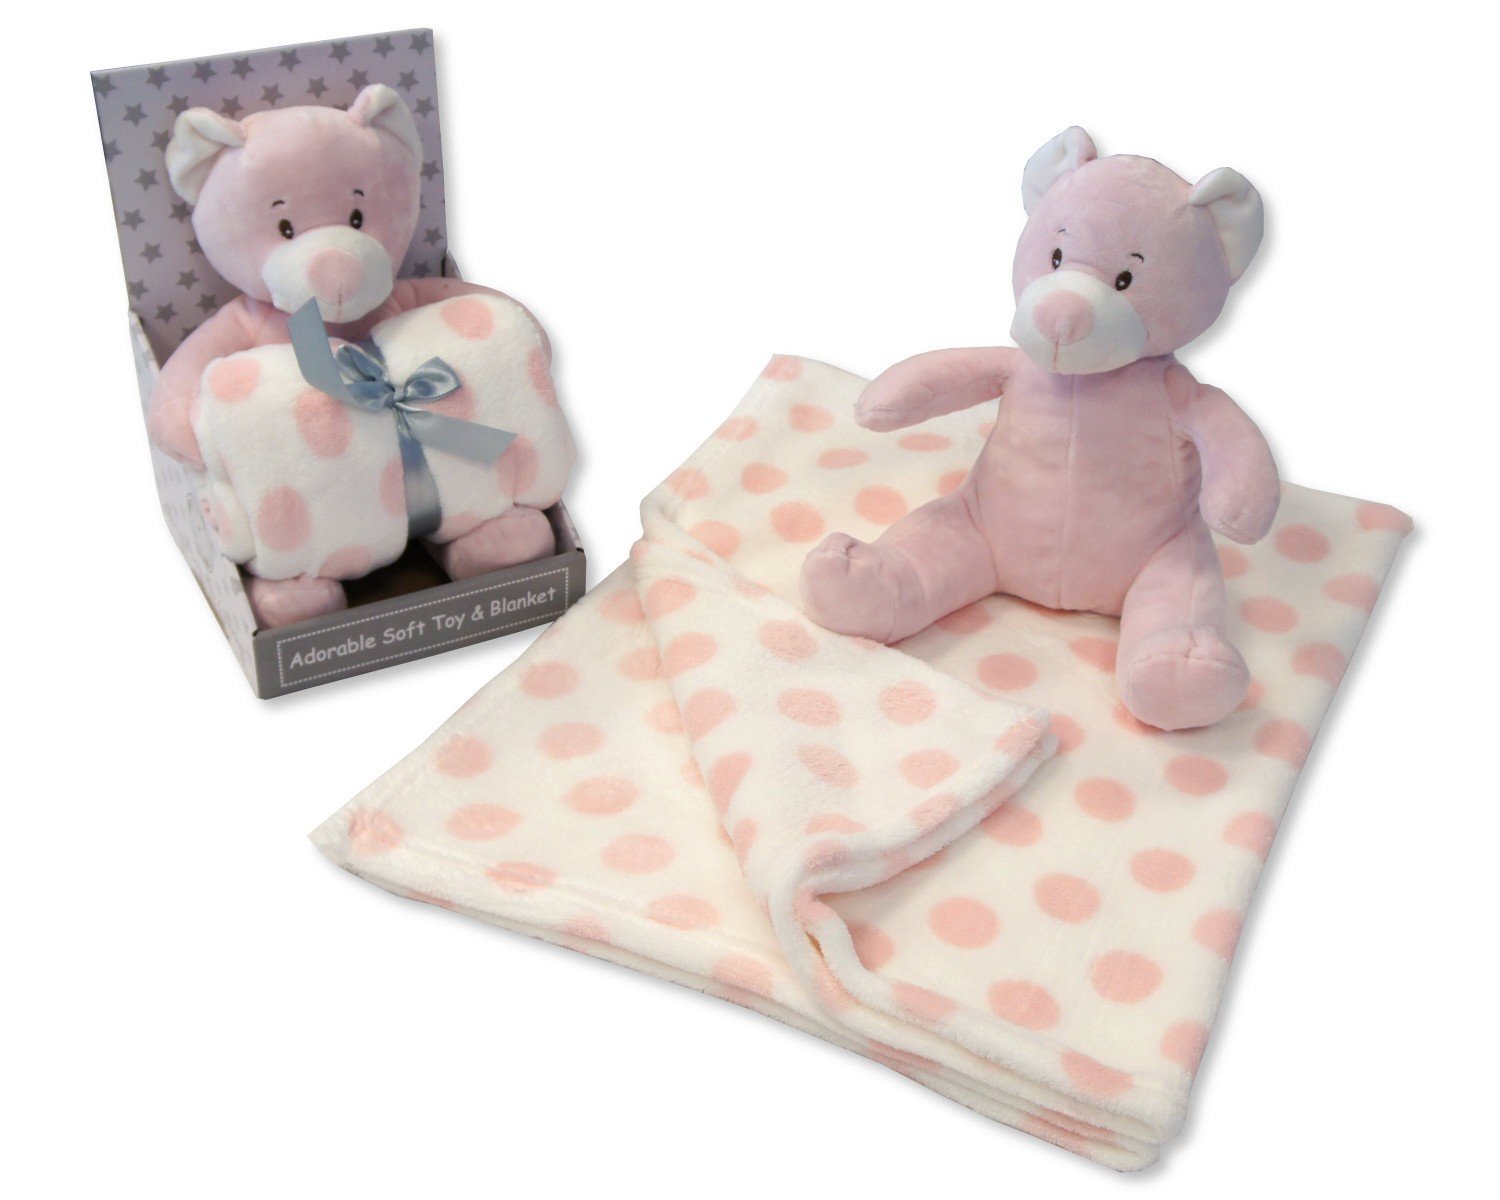 Baby Girls Pink Soft Teddy Bear & Polkadot Blanket - Boxed Gift Set - hanrattycraftsgifts.co.uk